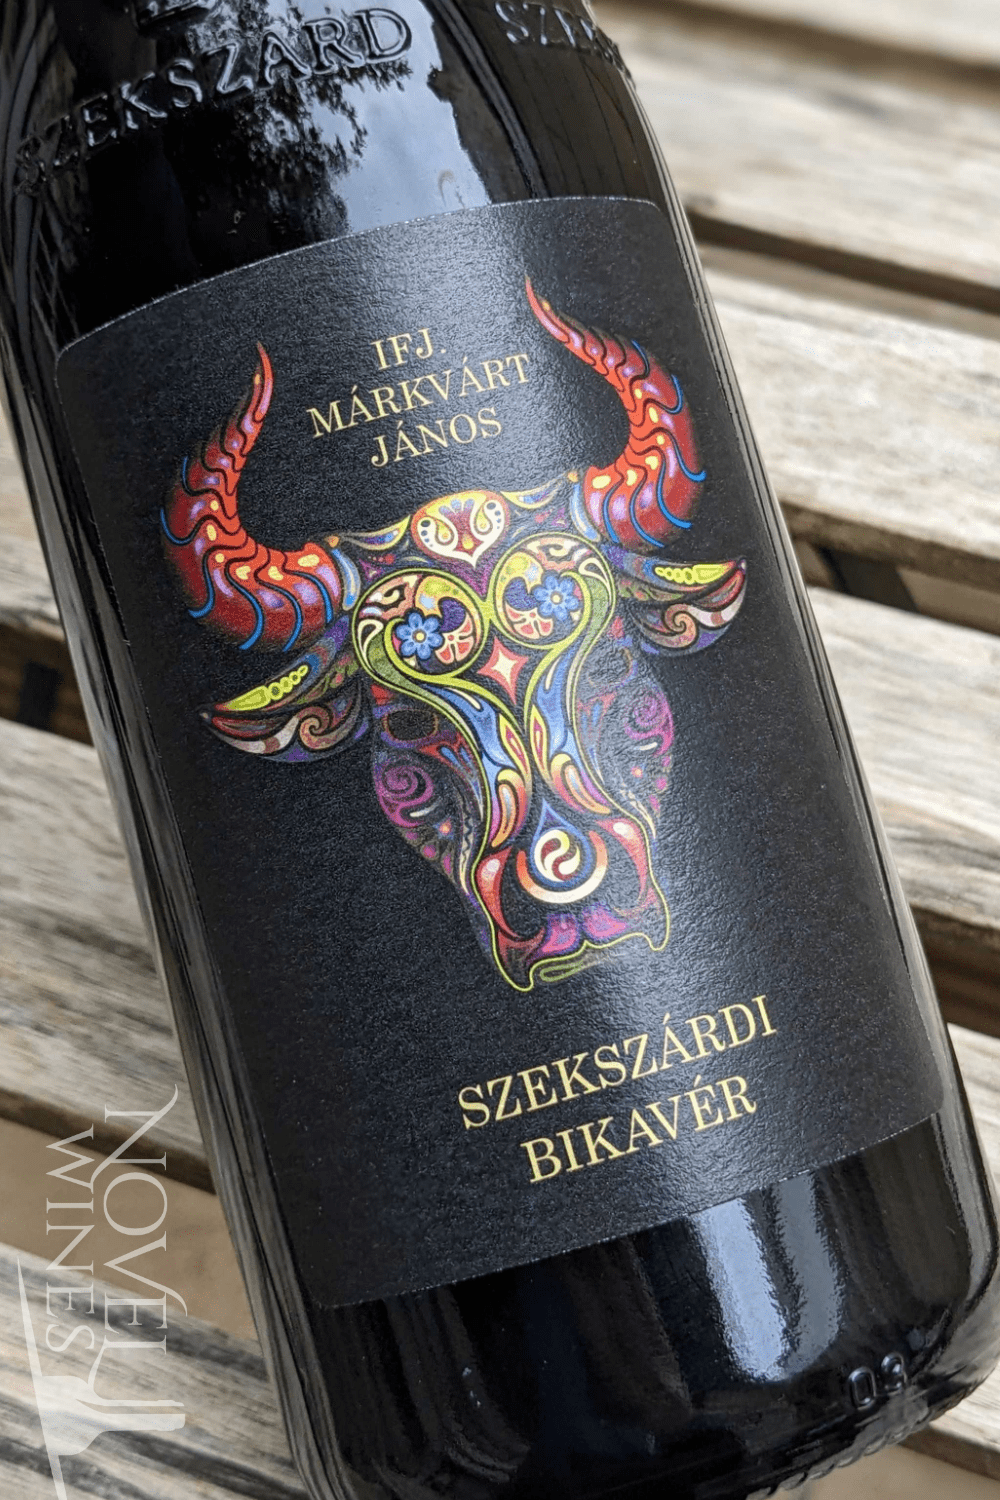 Markvart Red Wine Markvart Bikaver "Bull's Blood" 2018, Hungary